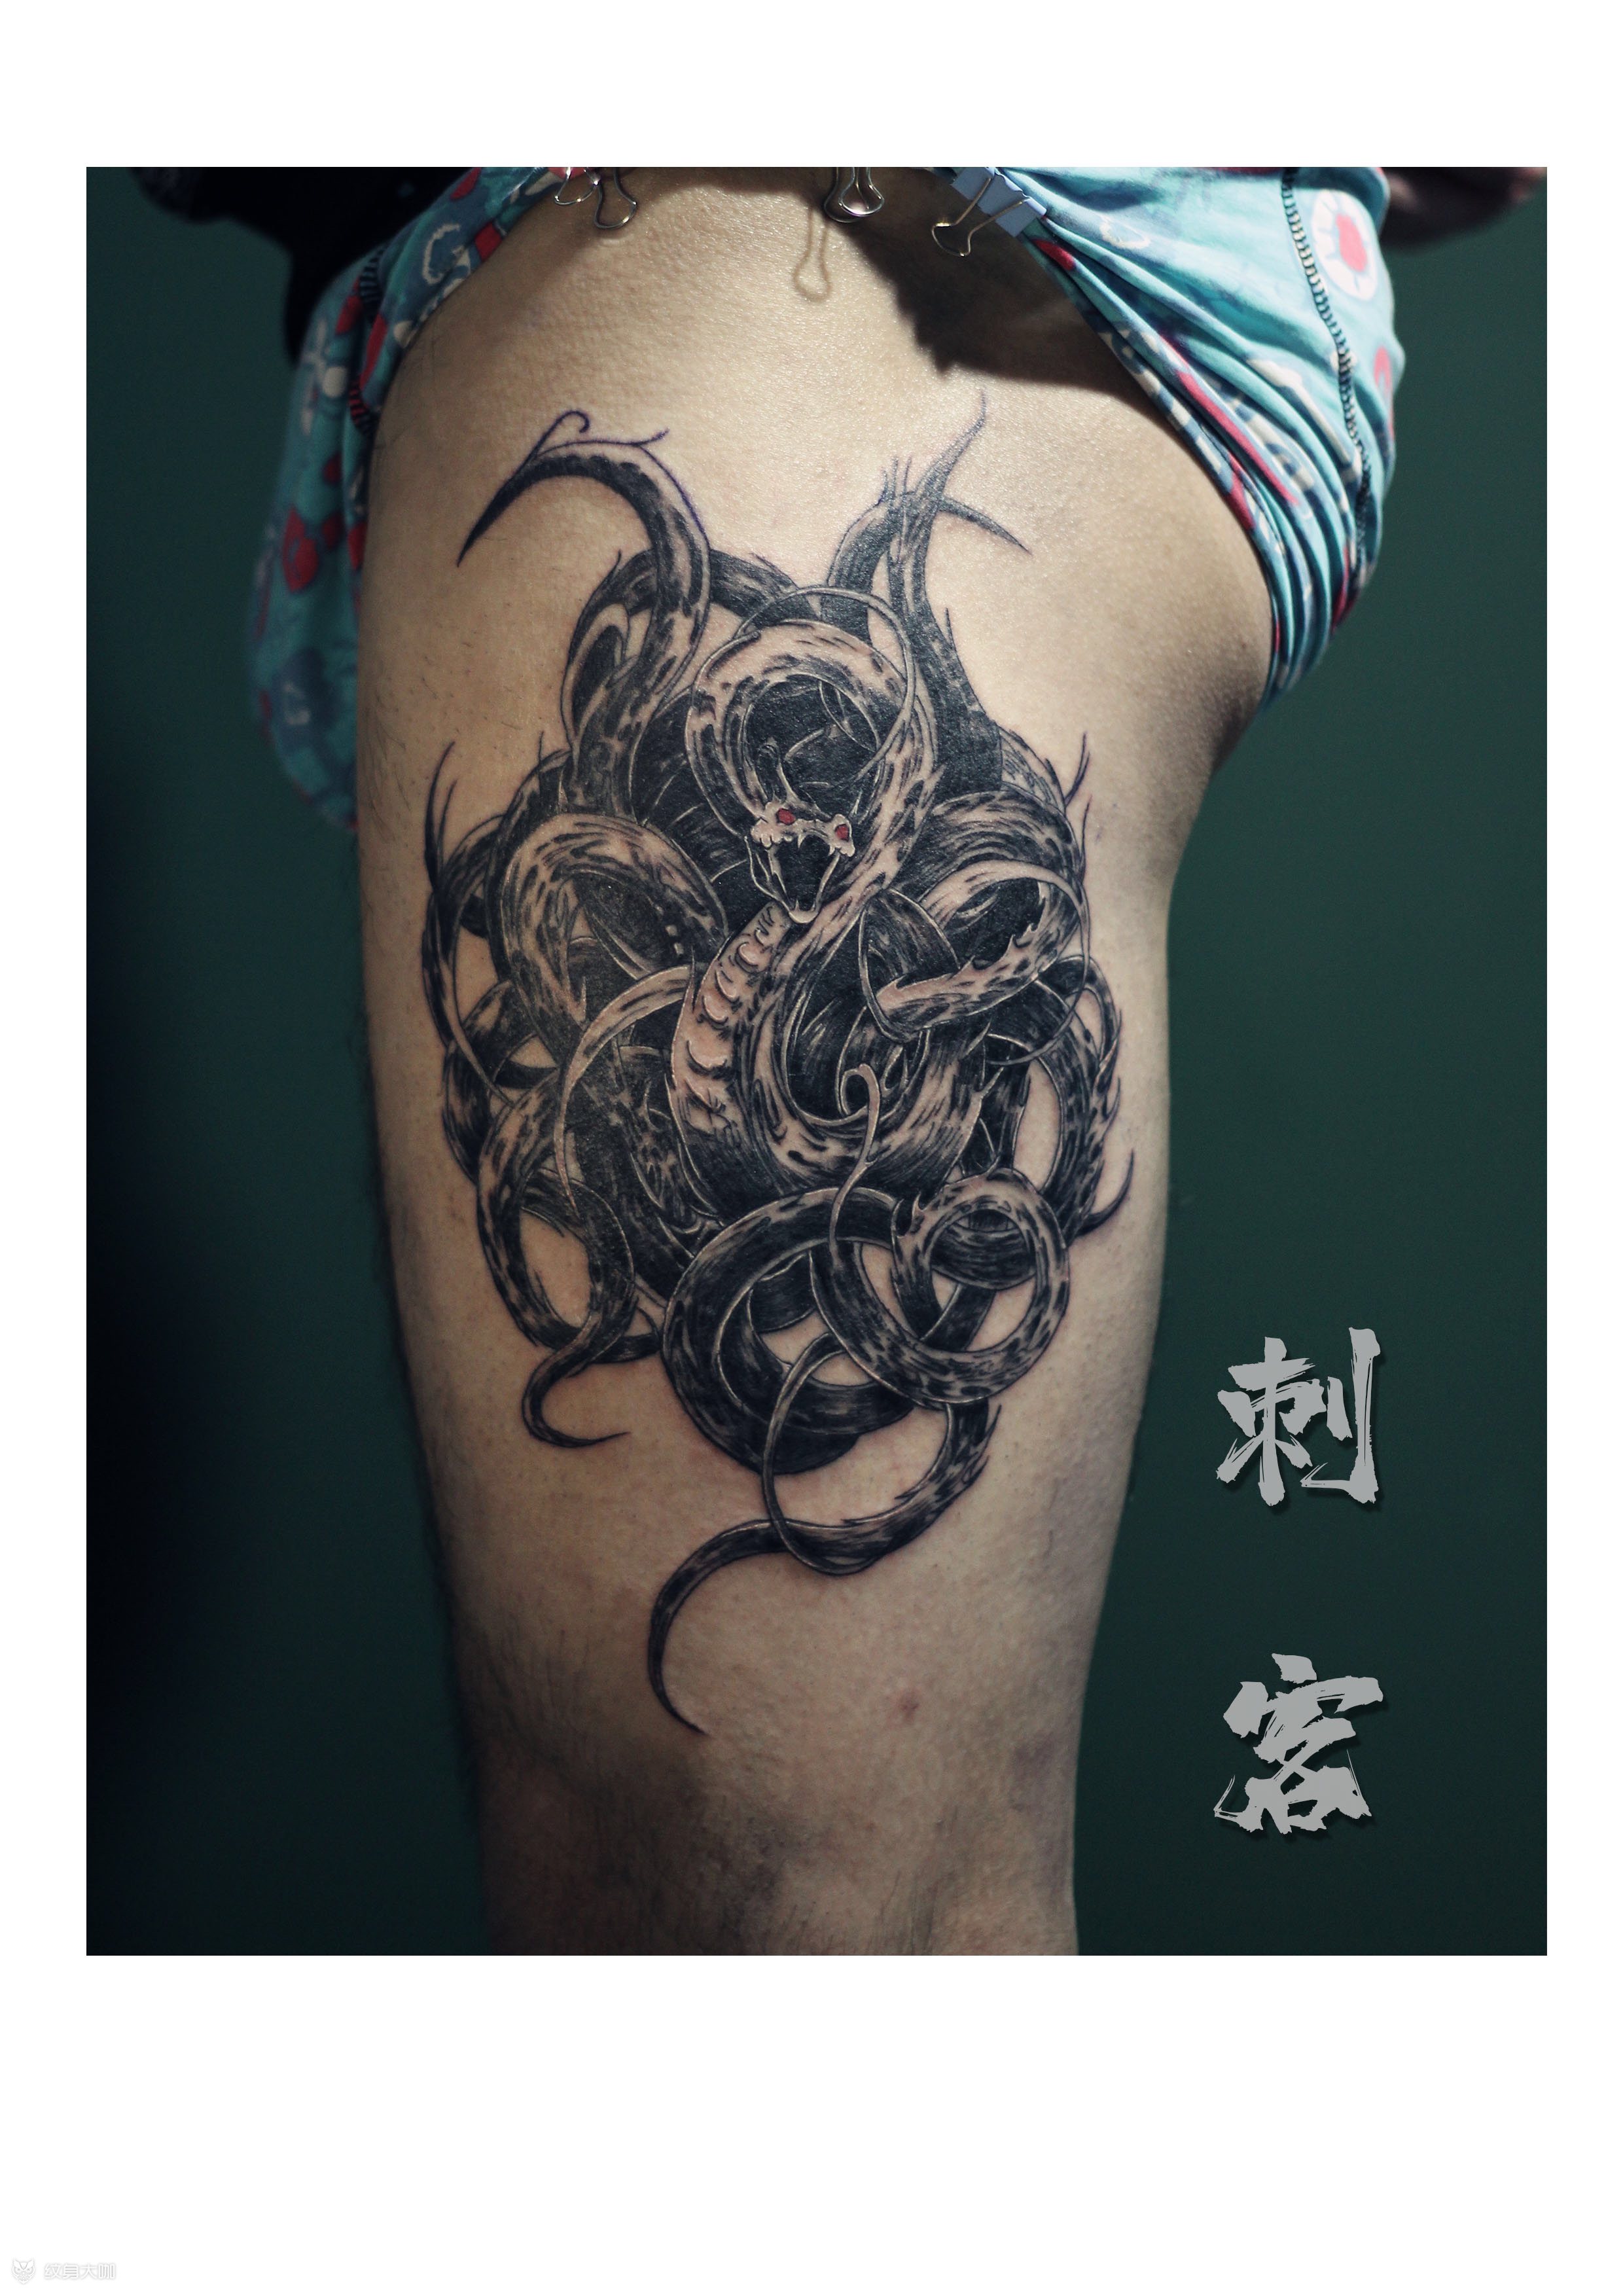 九头蛇纹身胸口手稿图片